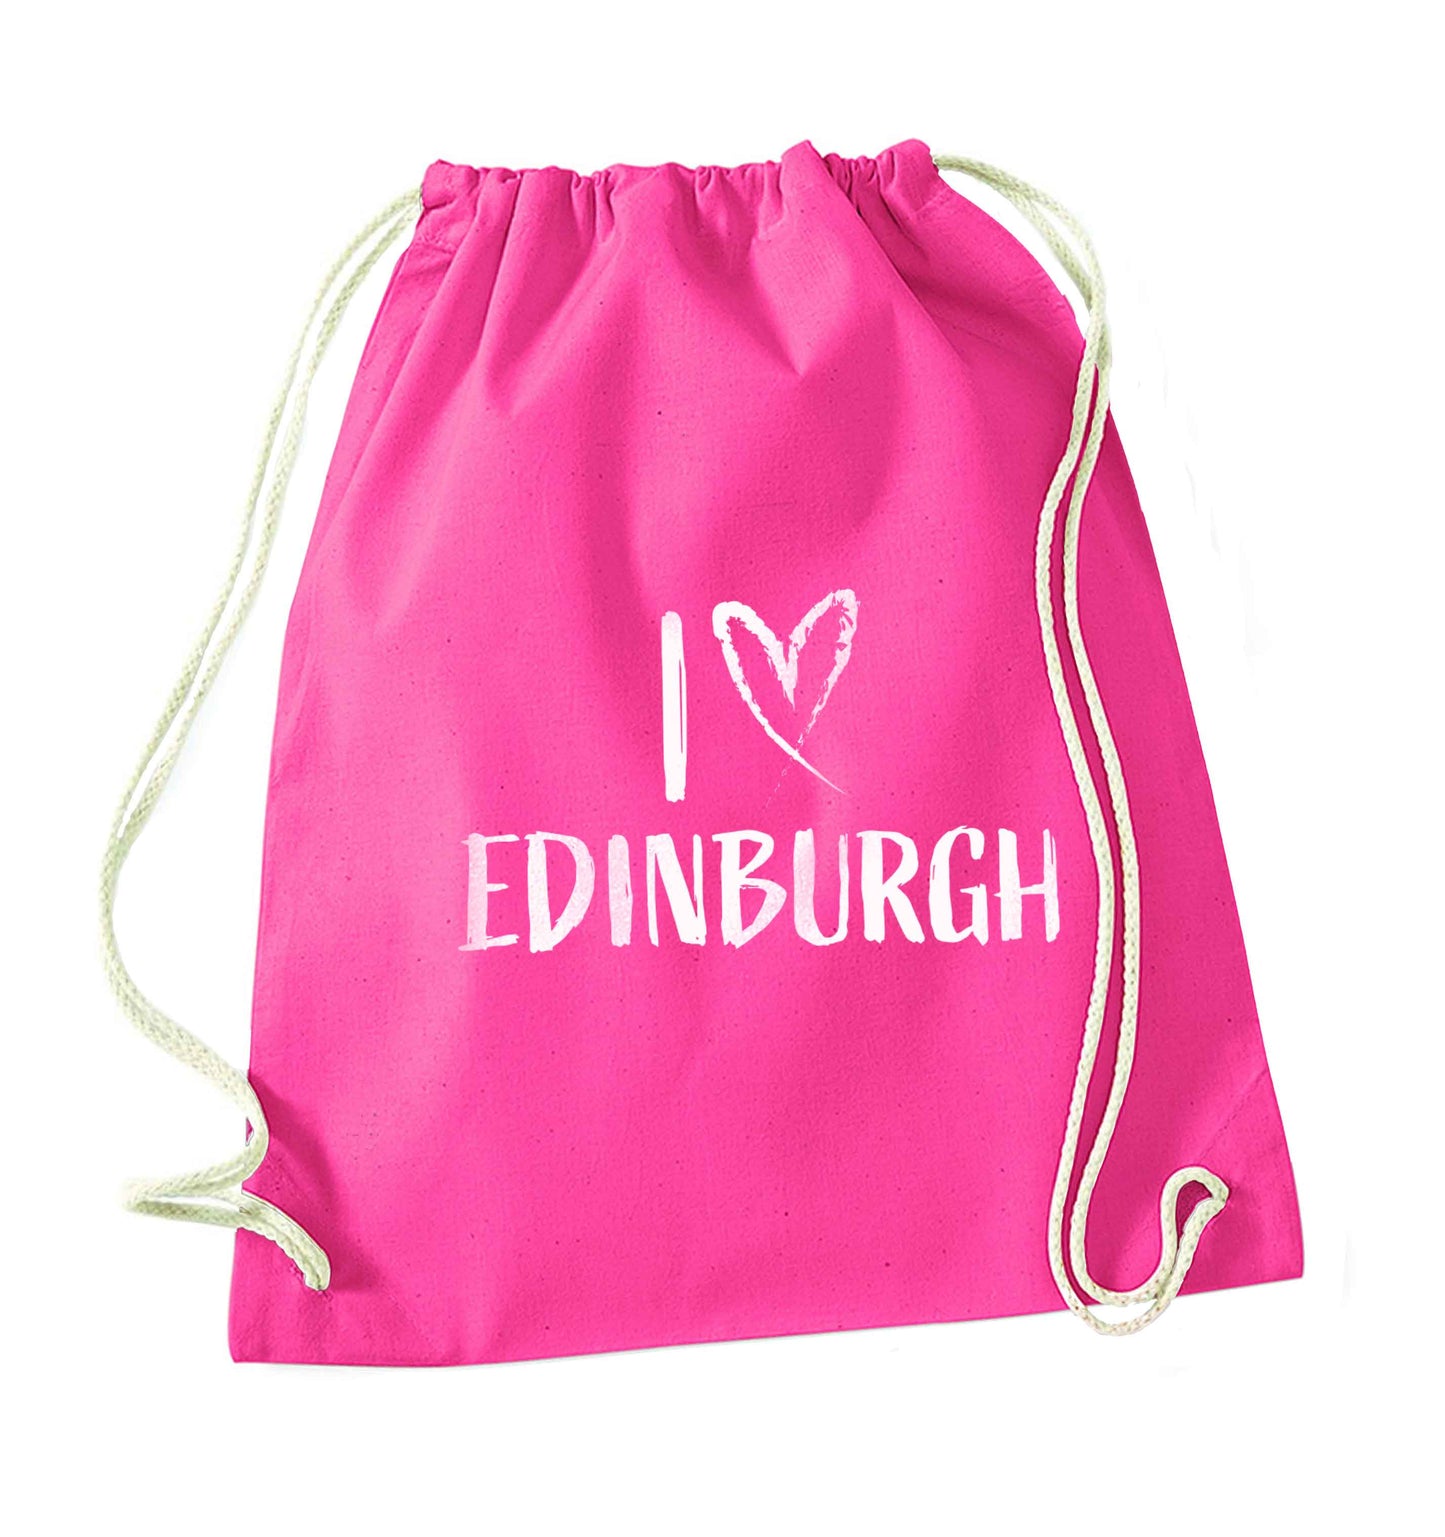 I love Edinburgh pink drawstring bag